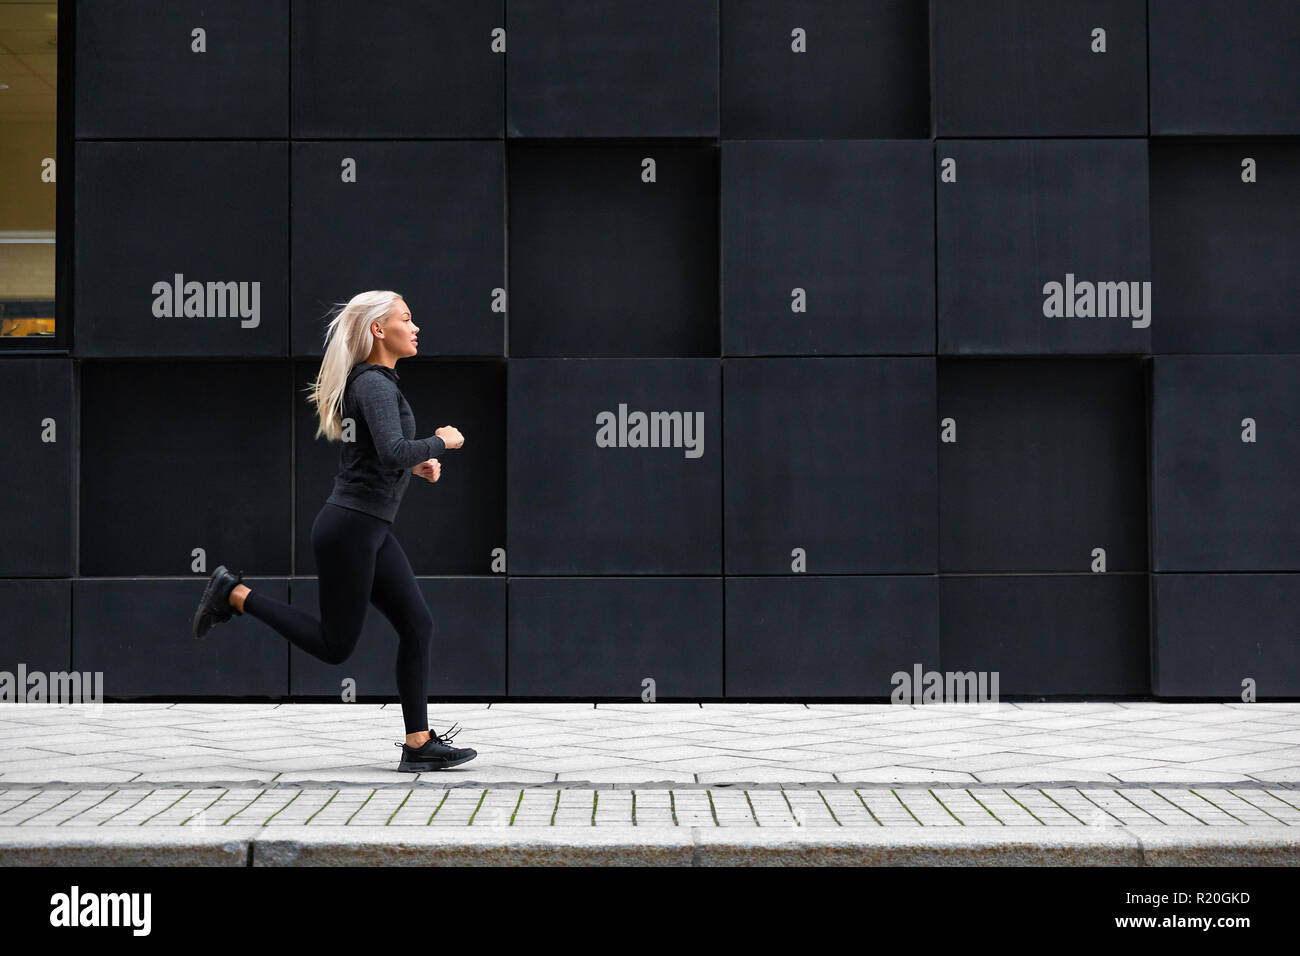 La donna in esecuzione sulla strada di città contro città moderna di pareti Foto Stock